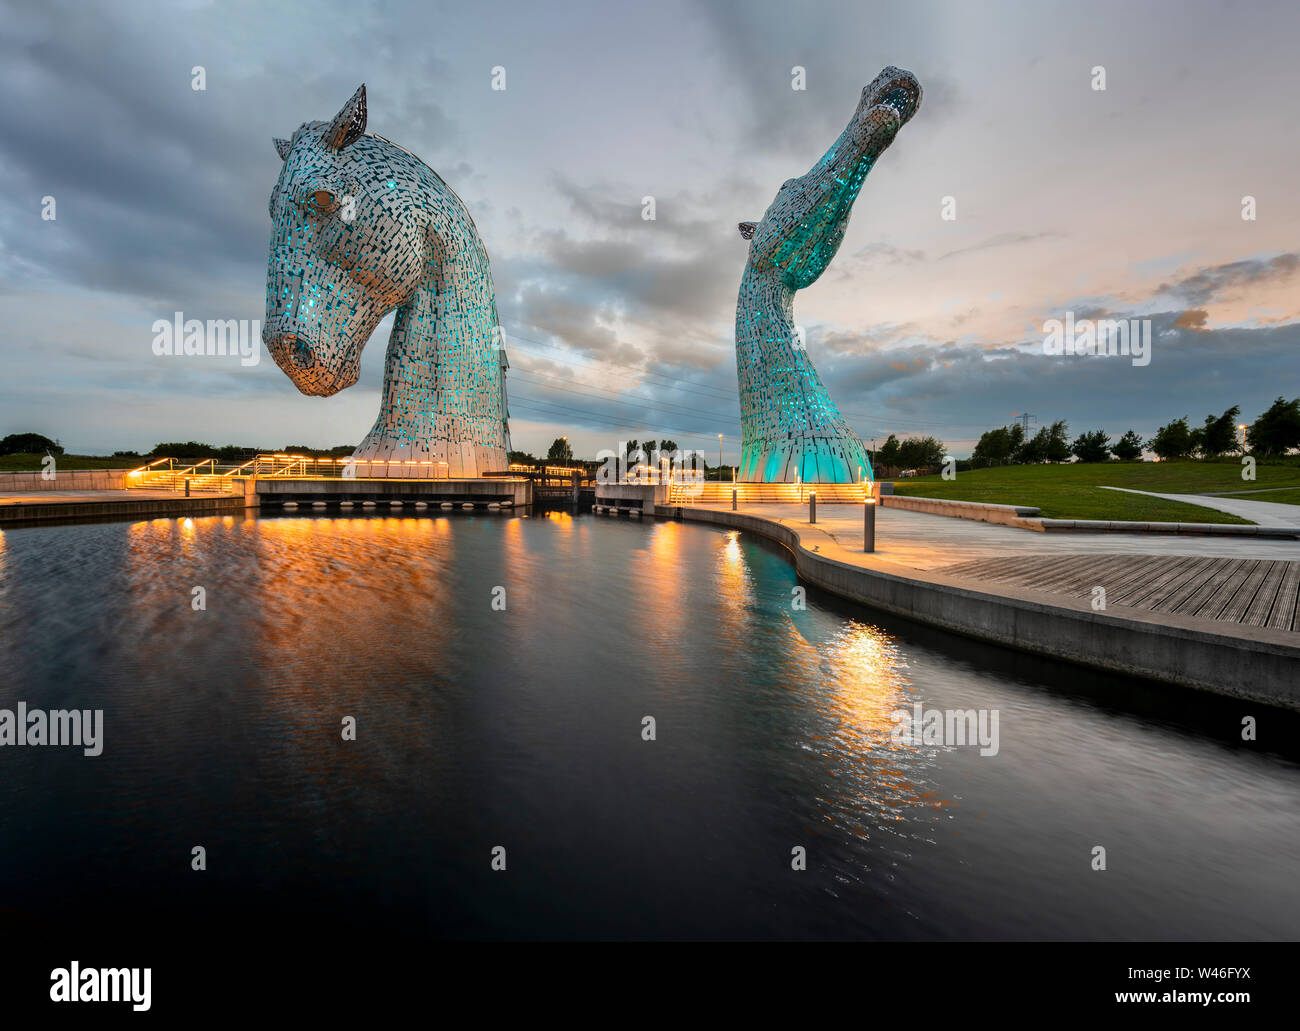 Les Kelpies sculptures tête de cheval géant mythique de l'esprits de l'eau à côté de la Forth et Clyde Canal une partie du projet de transformation des terres Helix Banque D'Images